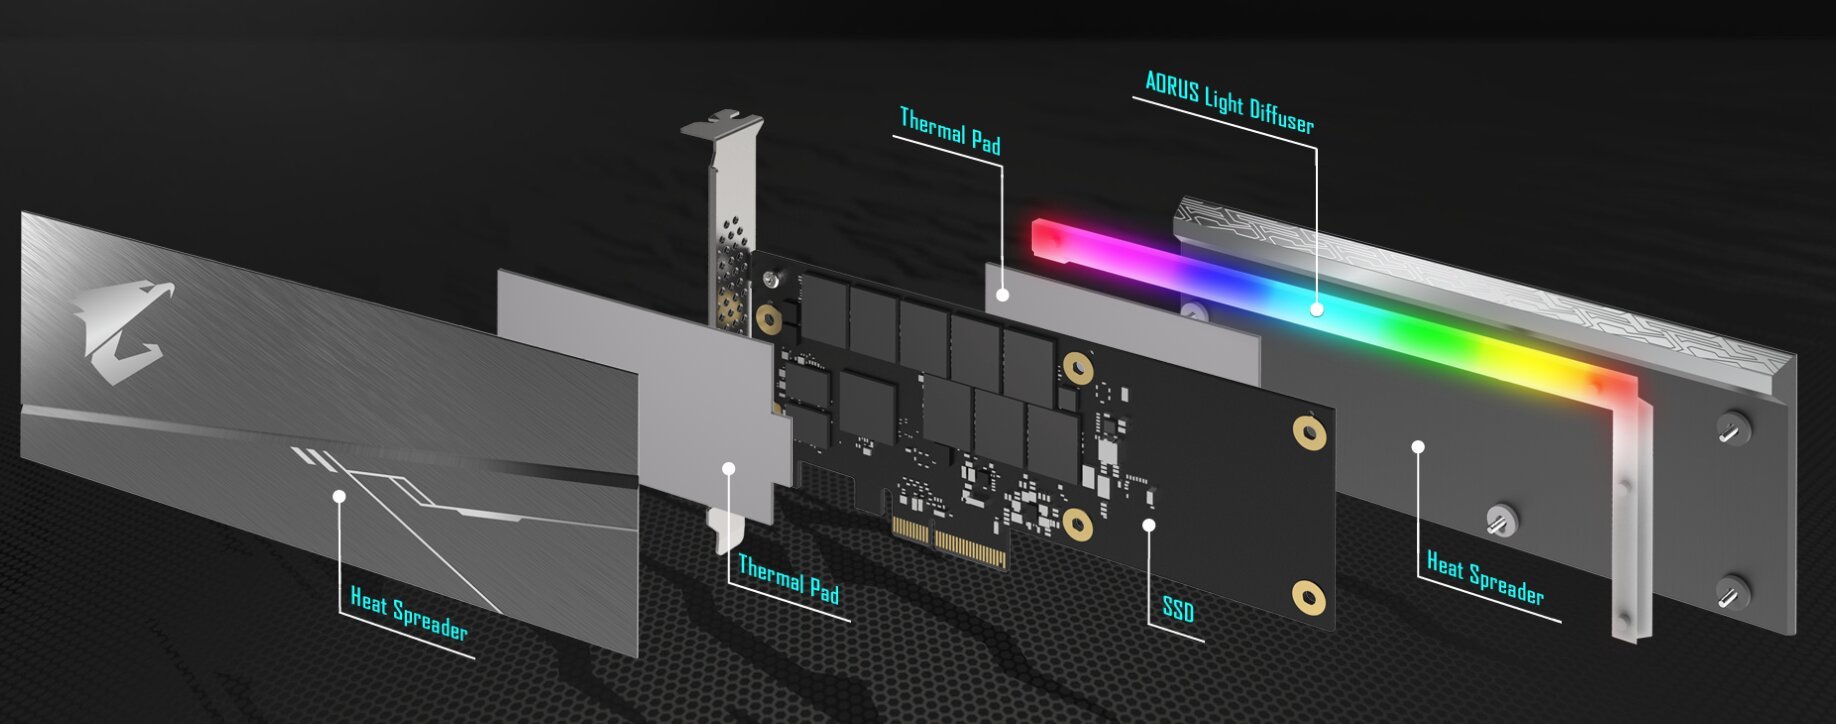 Image 2 : Le nouveau SSD PCI Express d'Aorus est très rapide... et bourré de LED RGB